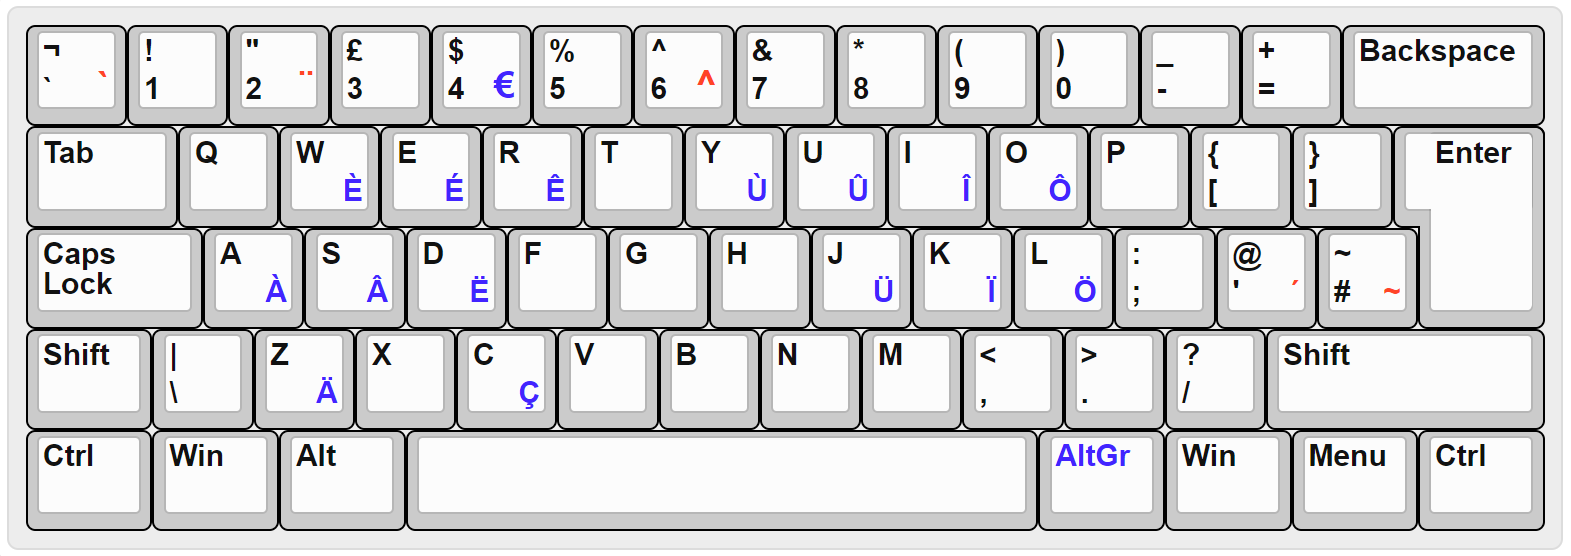 qwerty keyboard layout prt sc